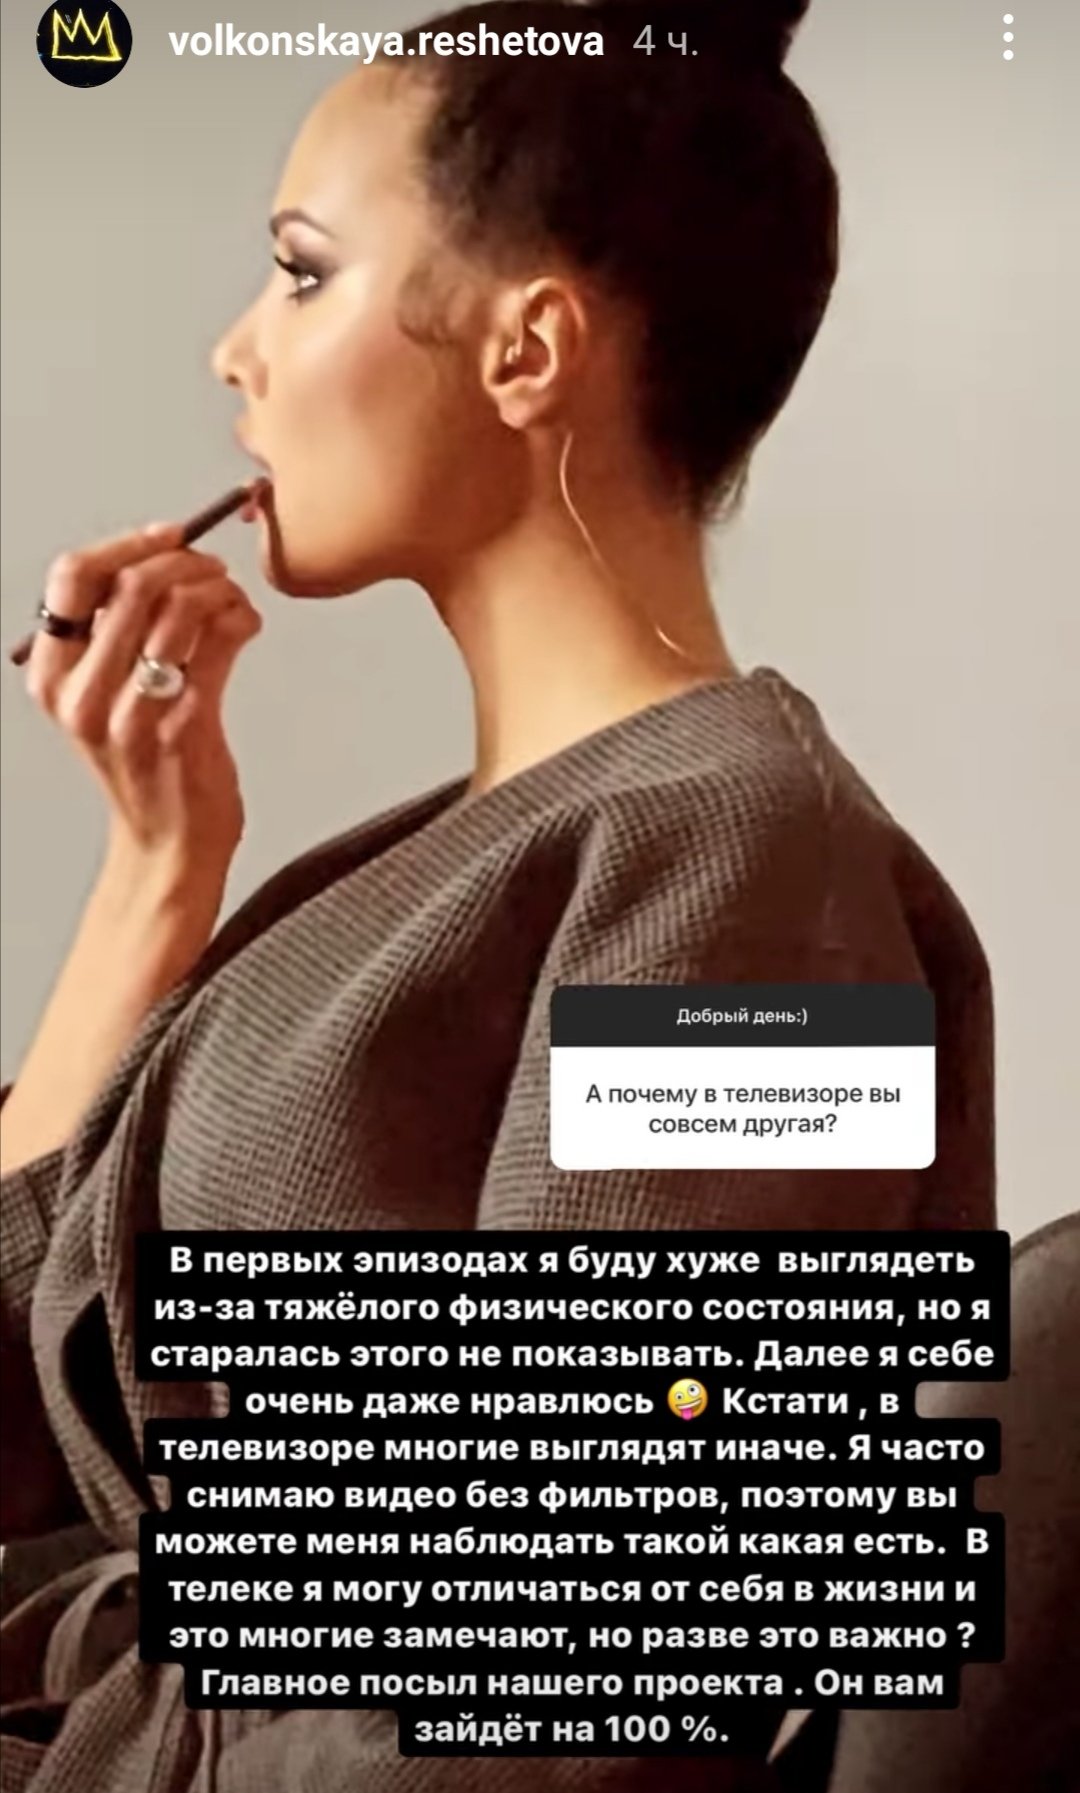 Анастасия Решетова посетовала, что телевидение исказило ее внешность